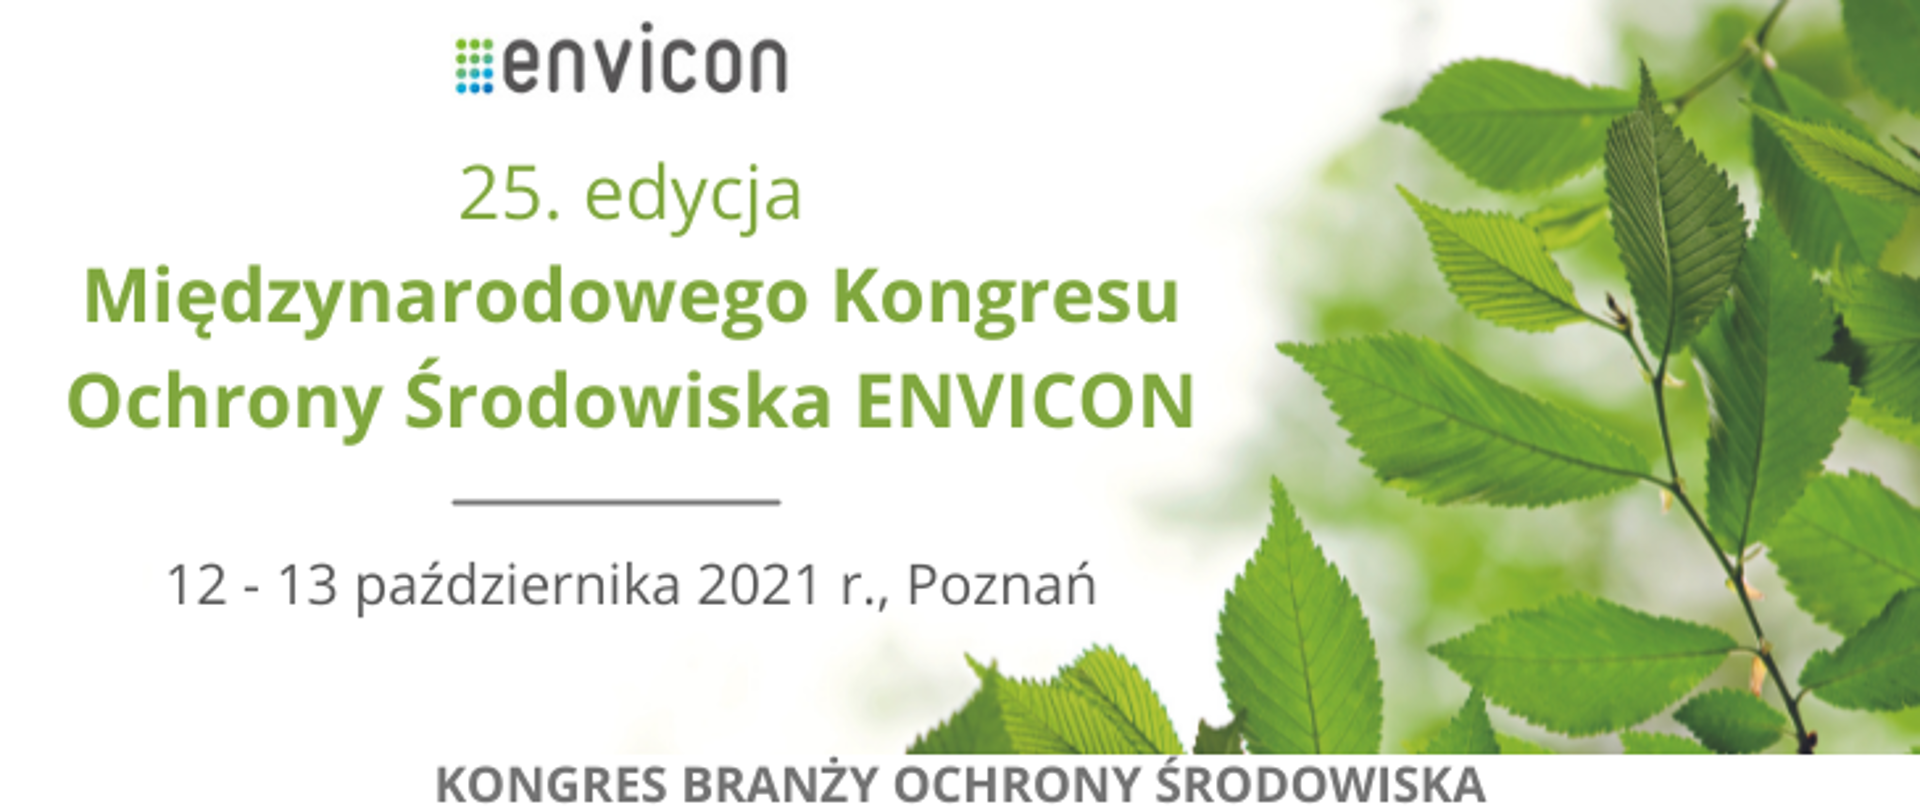 Międzynarodowy Kongres ENVICON 